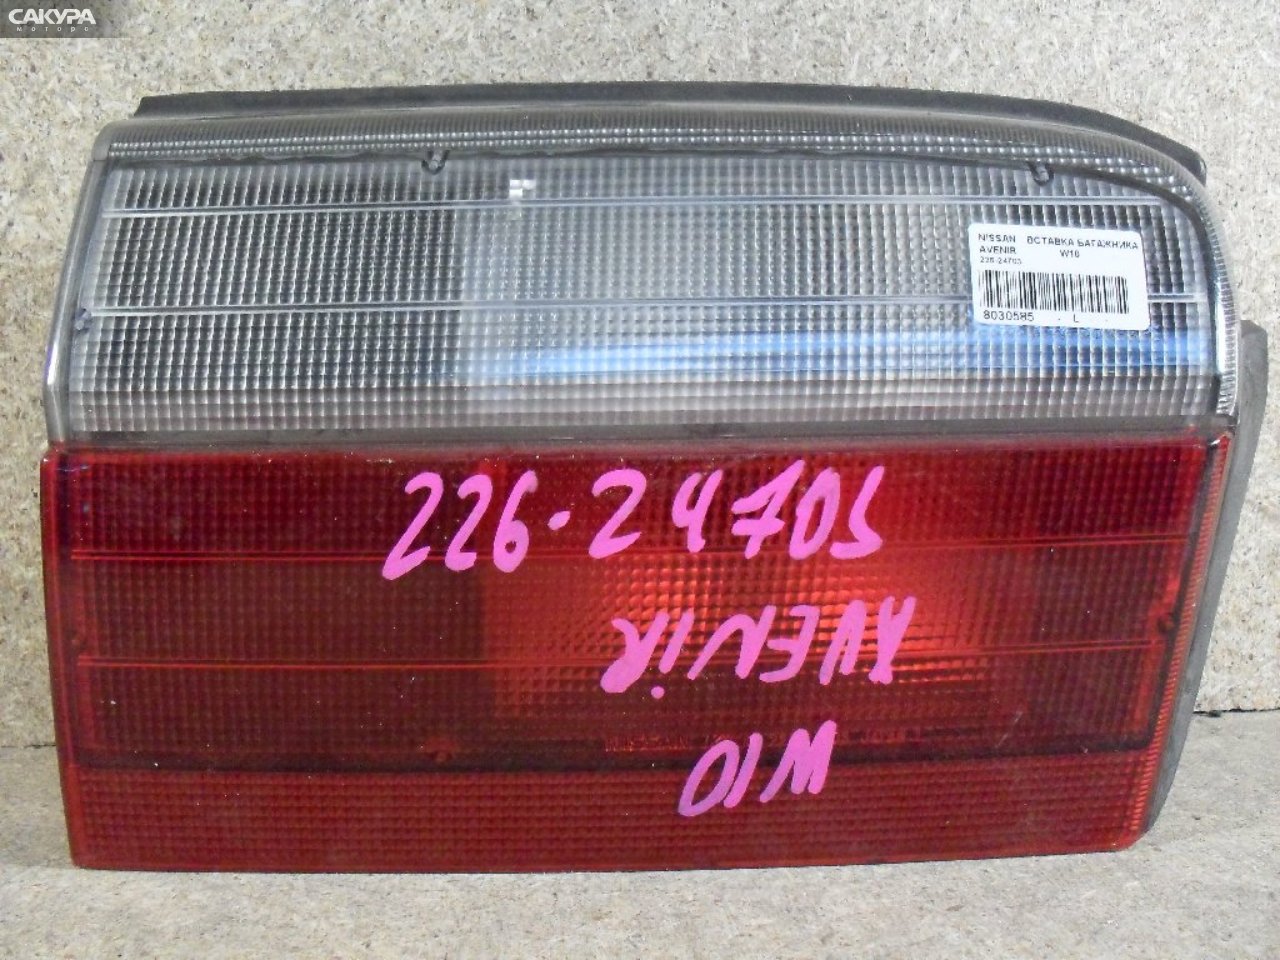 Фонарь вставка багажника левый Nissan Avenir W10 226-24703: купить в Сакура Абакан.